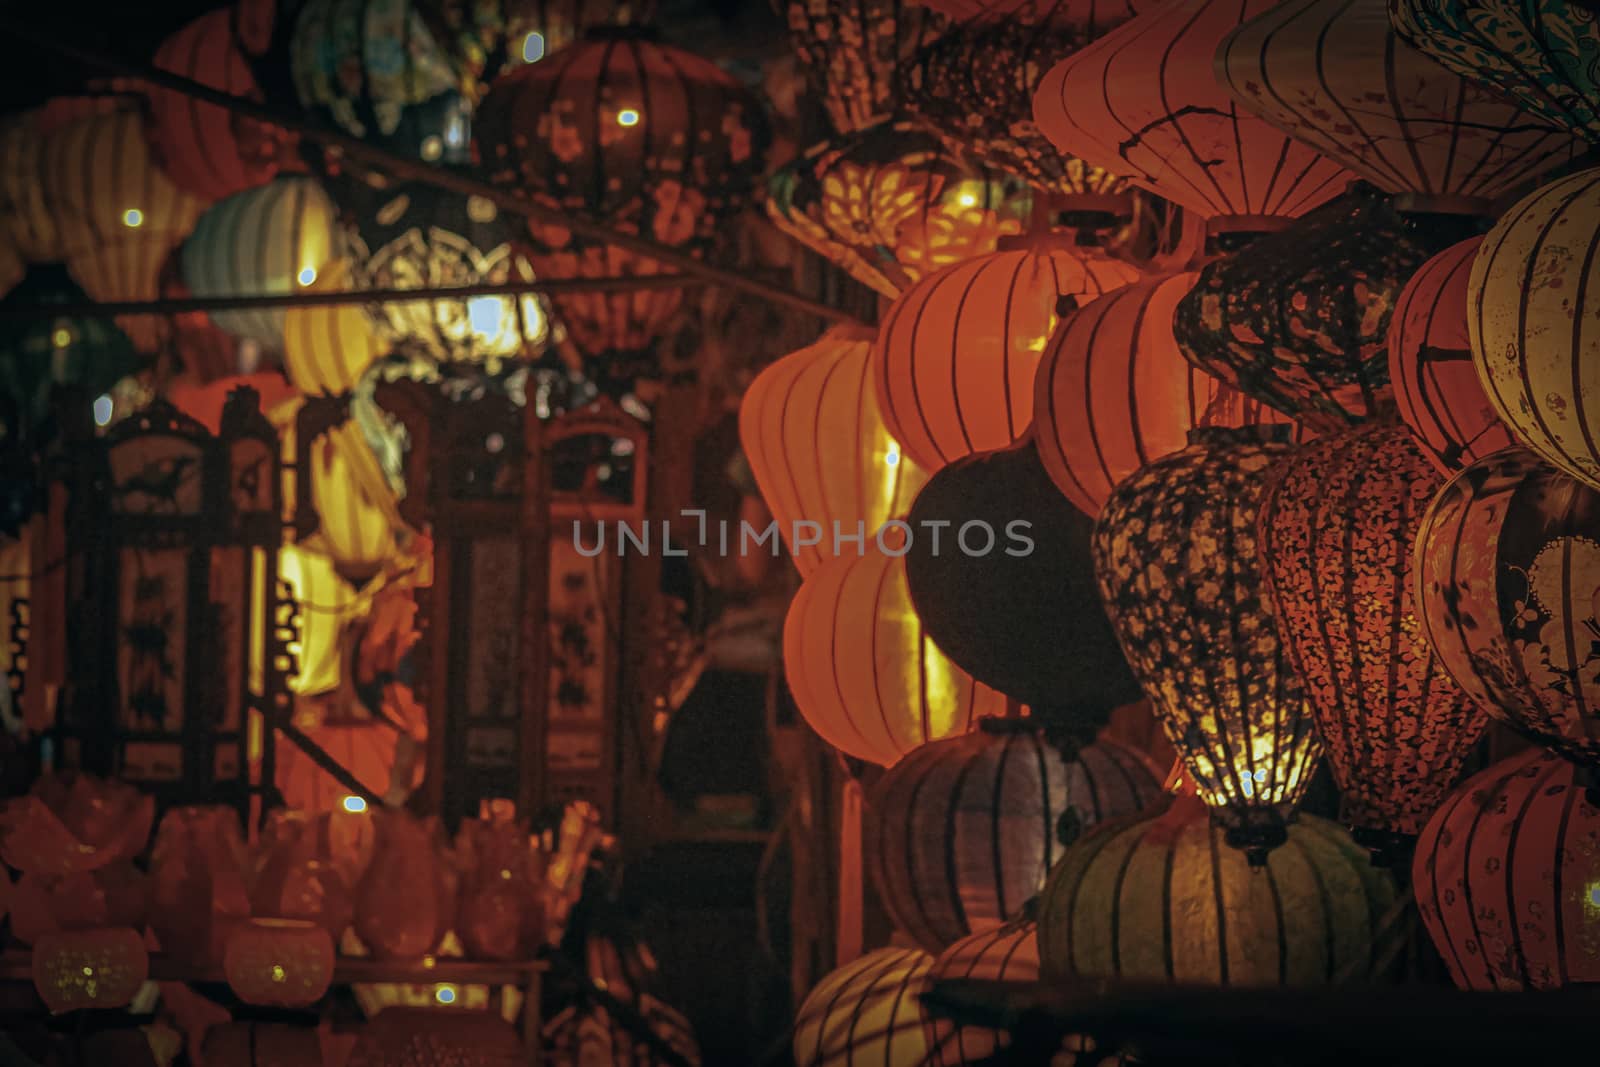 Lantern Festival in Hoi an, Vietnam by Sonnet15